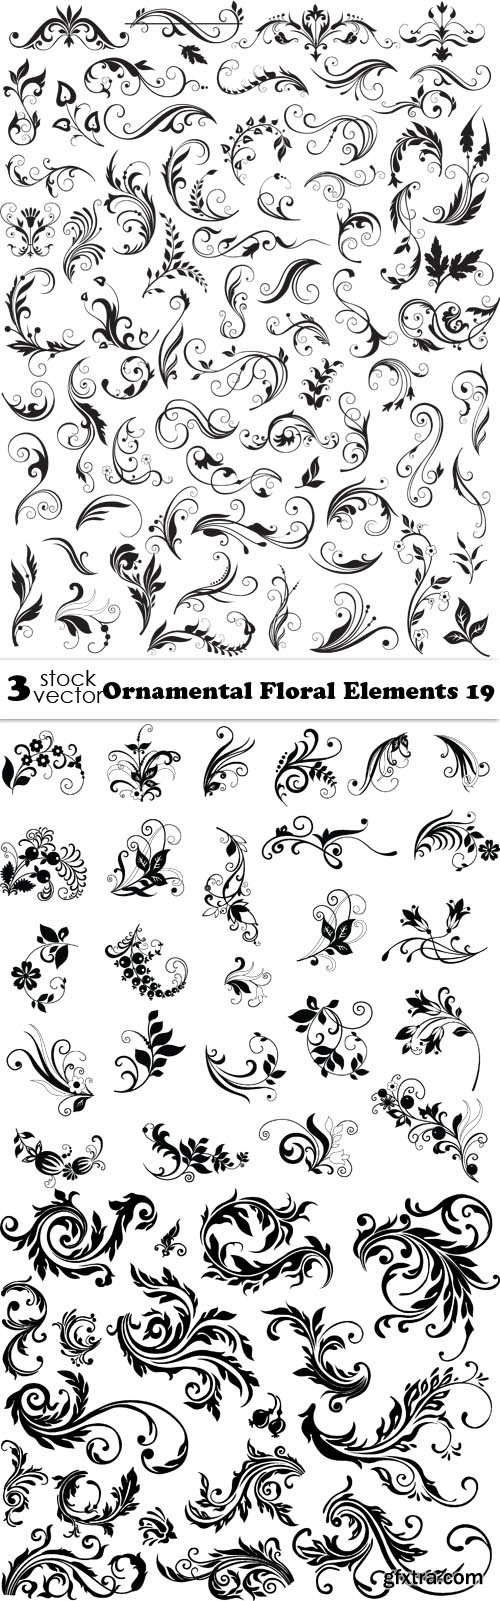 Vectors - Ornamental Floral Elements 19